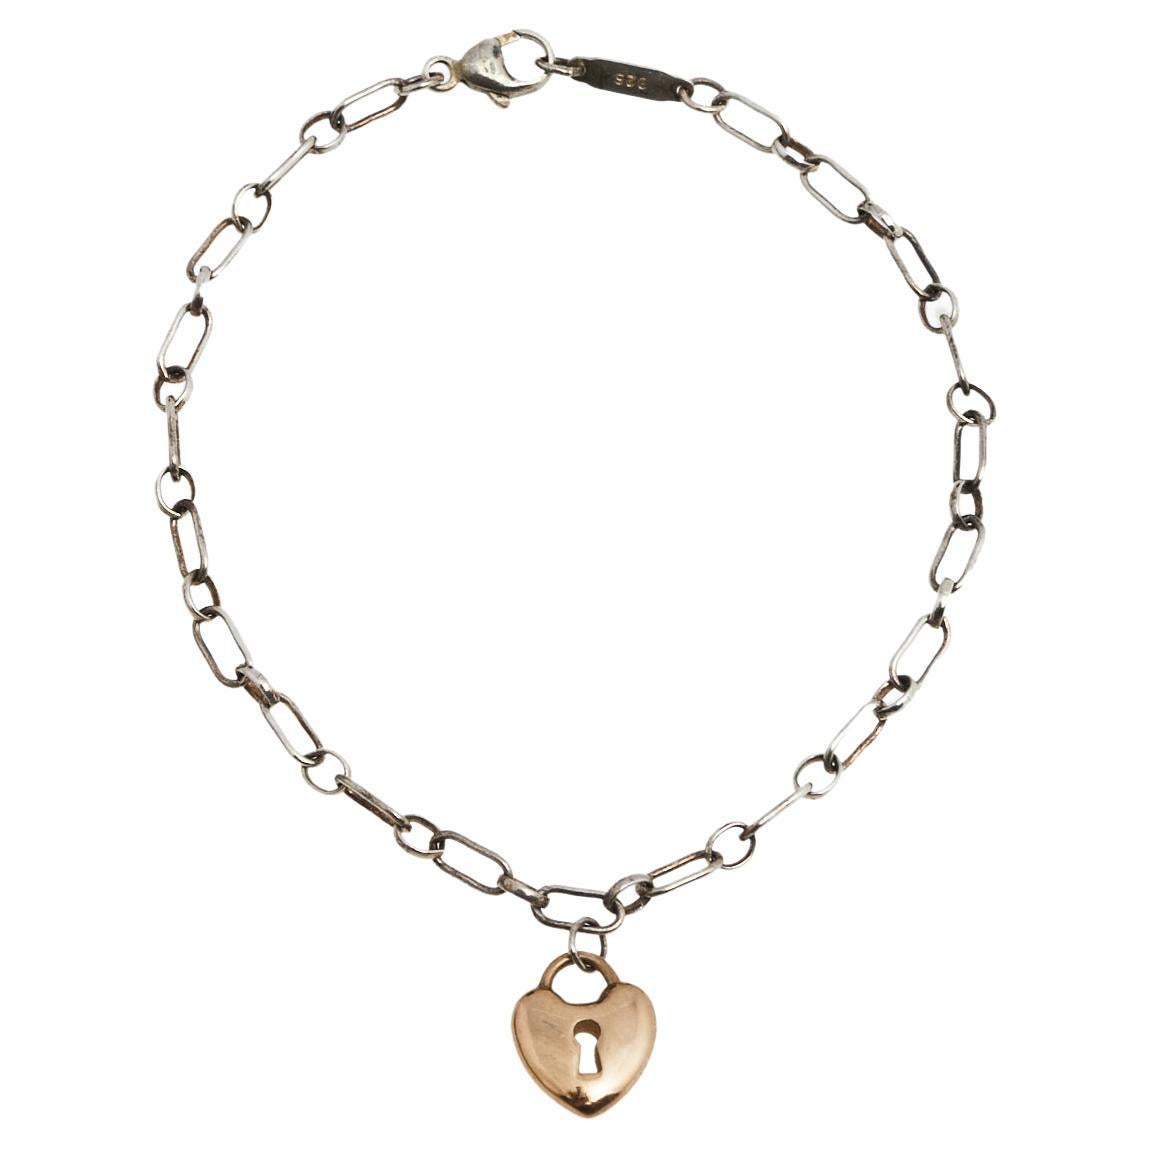 Tiffany & Co. 18k Rose Gold Heart Lock Sterling Silver Charm Bracelet